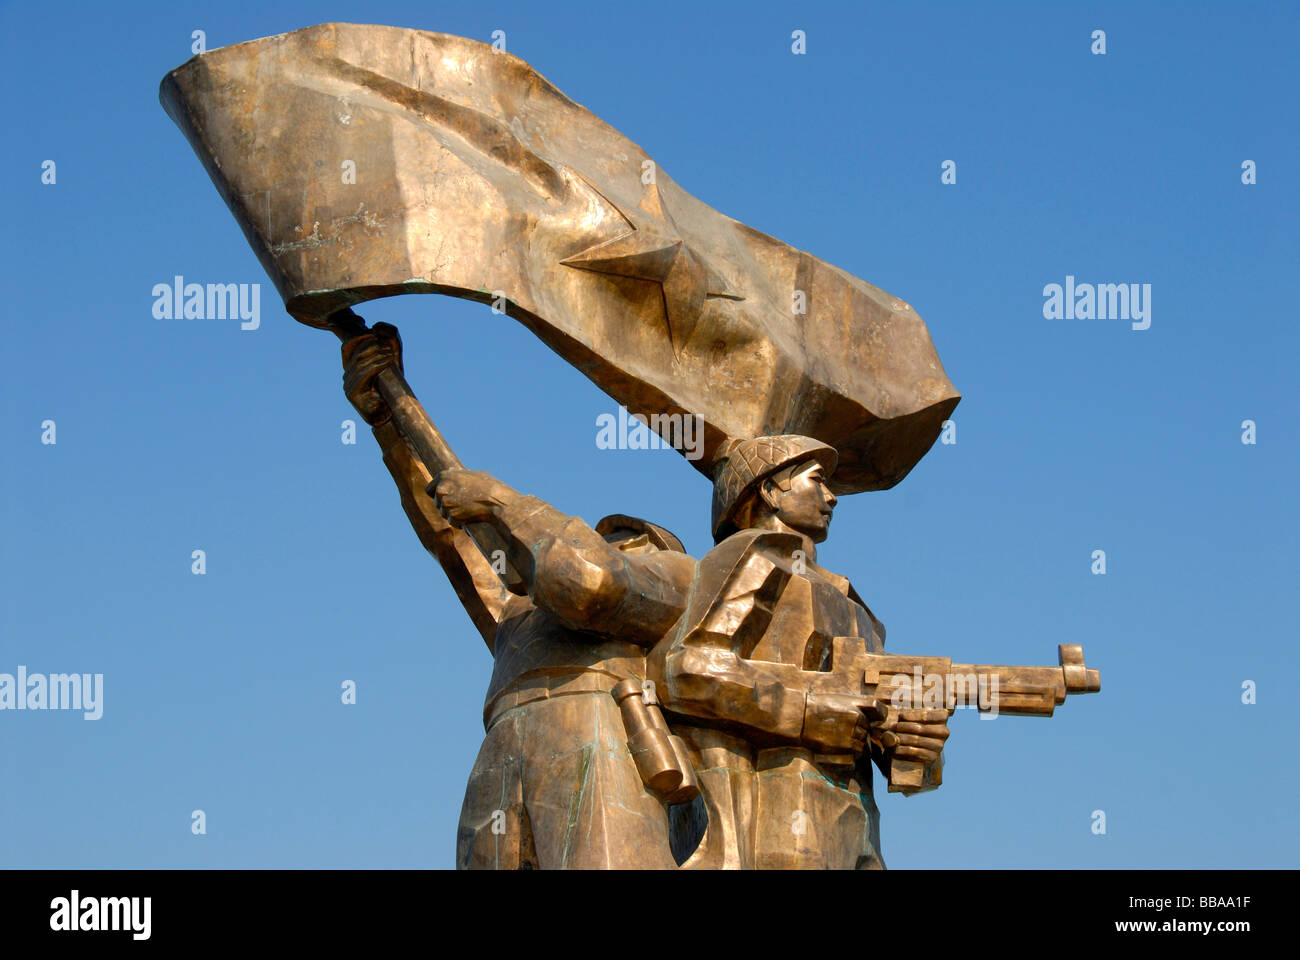 Première Guerre d'Indochine 1954, grand monument en bronze de la victoire de l'Viet Minh, Dien Bien Phu, Vietnam, Asie du Sud, Asie Banque D'Images